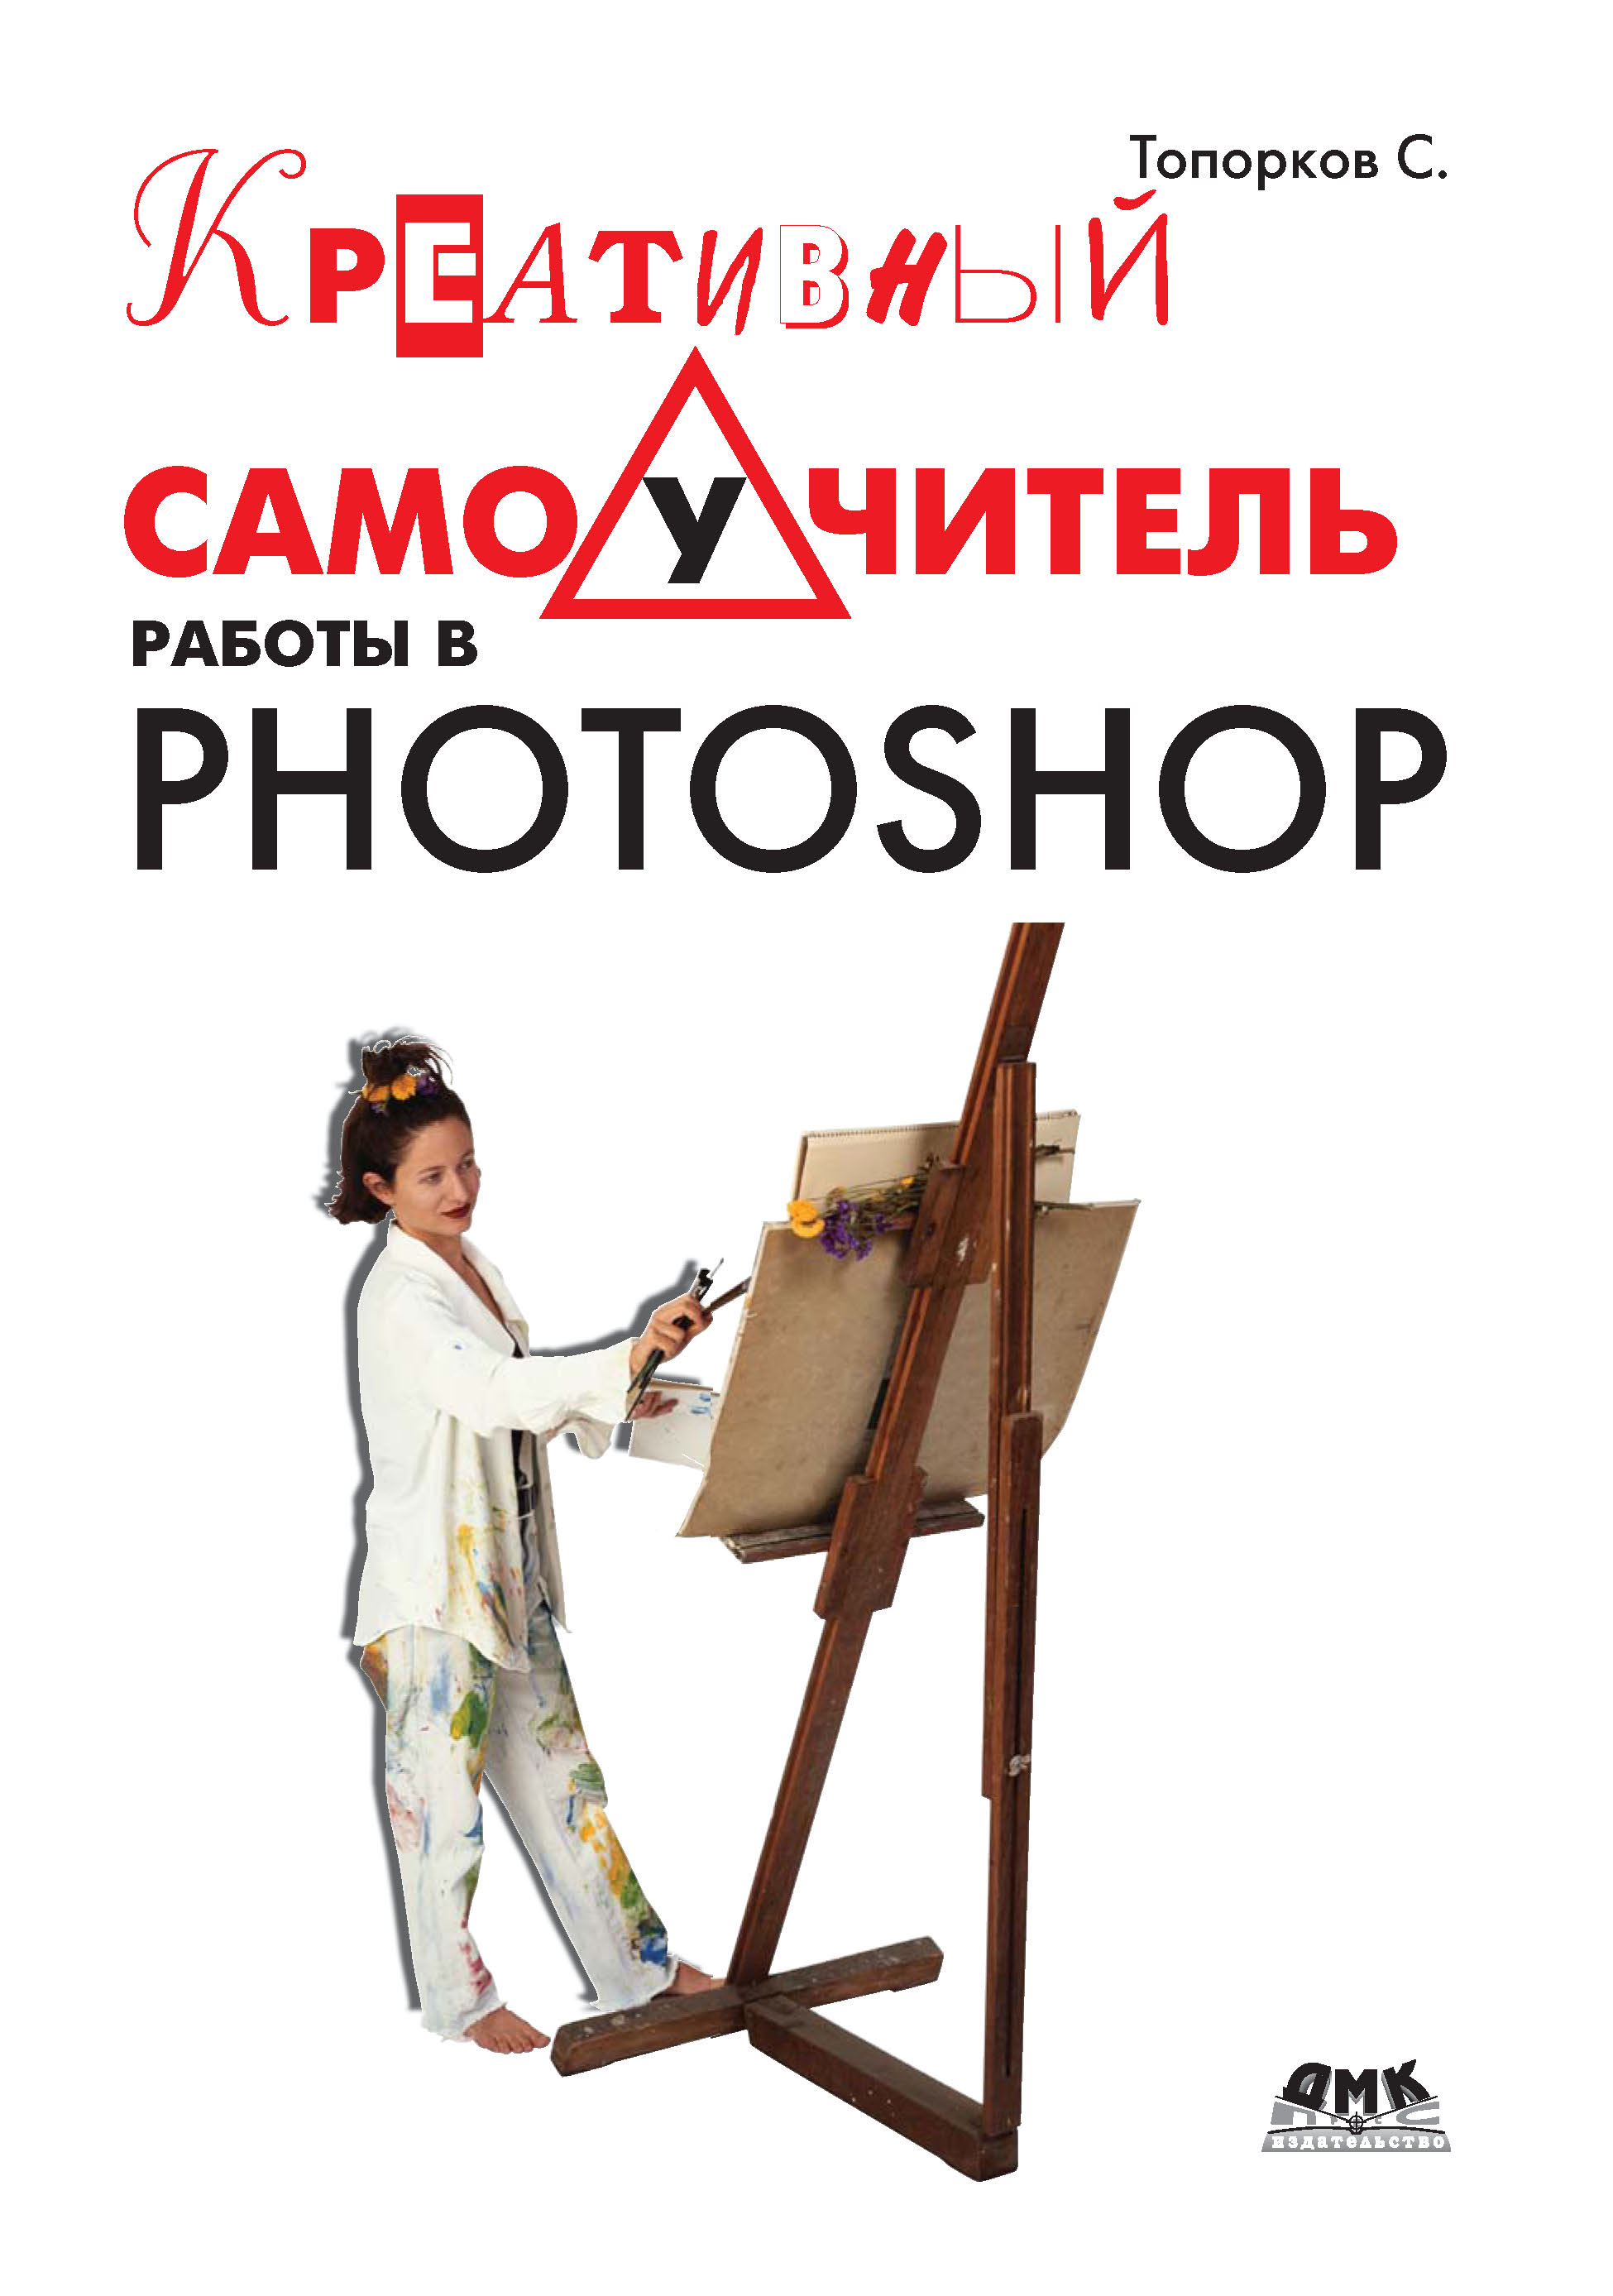 Книга  Креативный самоучитель работы в Photoshop созданная С. С. Топорков может относится к жанру программы, самоучители. Стоимость электронной книги Креативный самоучитель работы в Photoshop с идентификатором 22842530 составляет 159.00 руб.